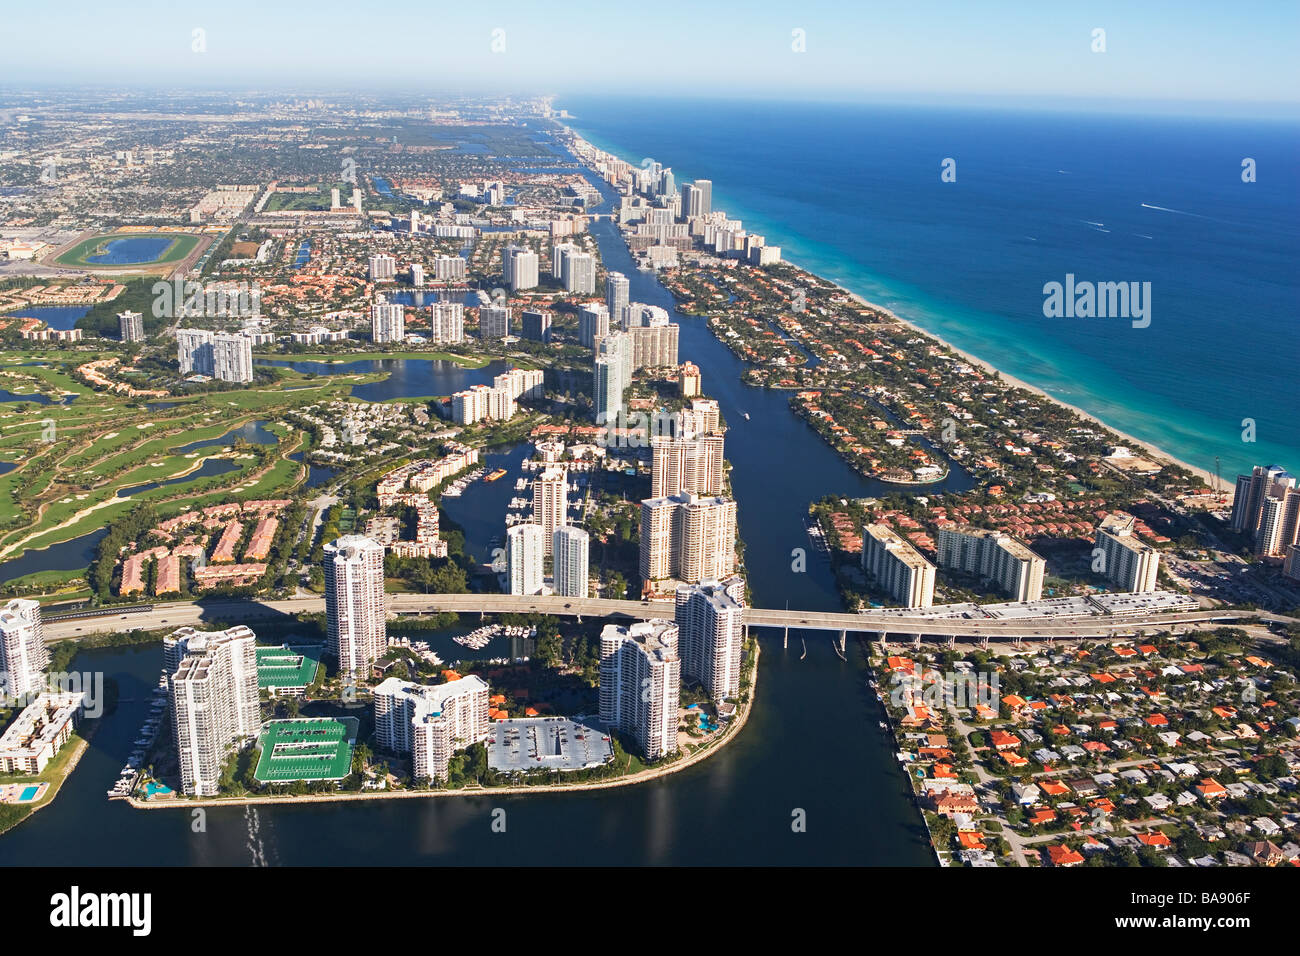 Vista aérea de la ciudad costera Foto de stock